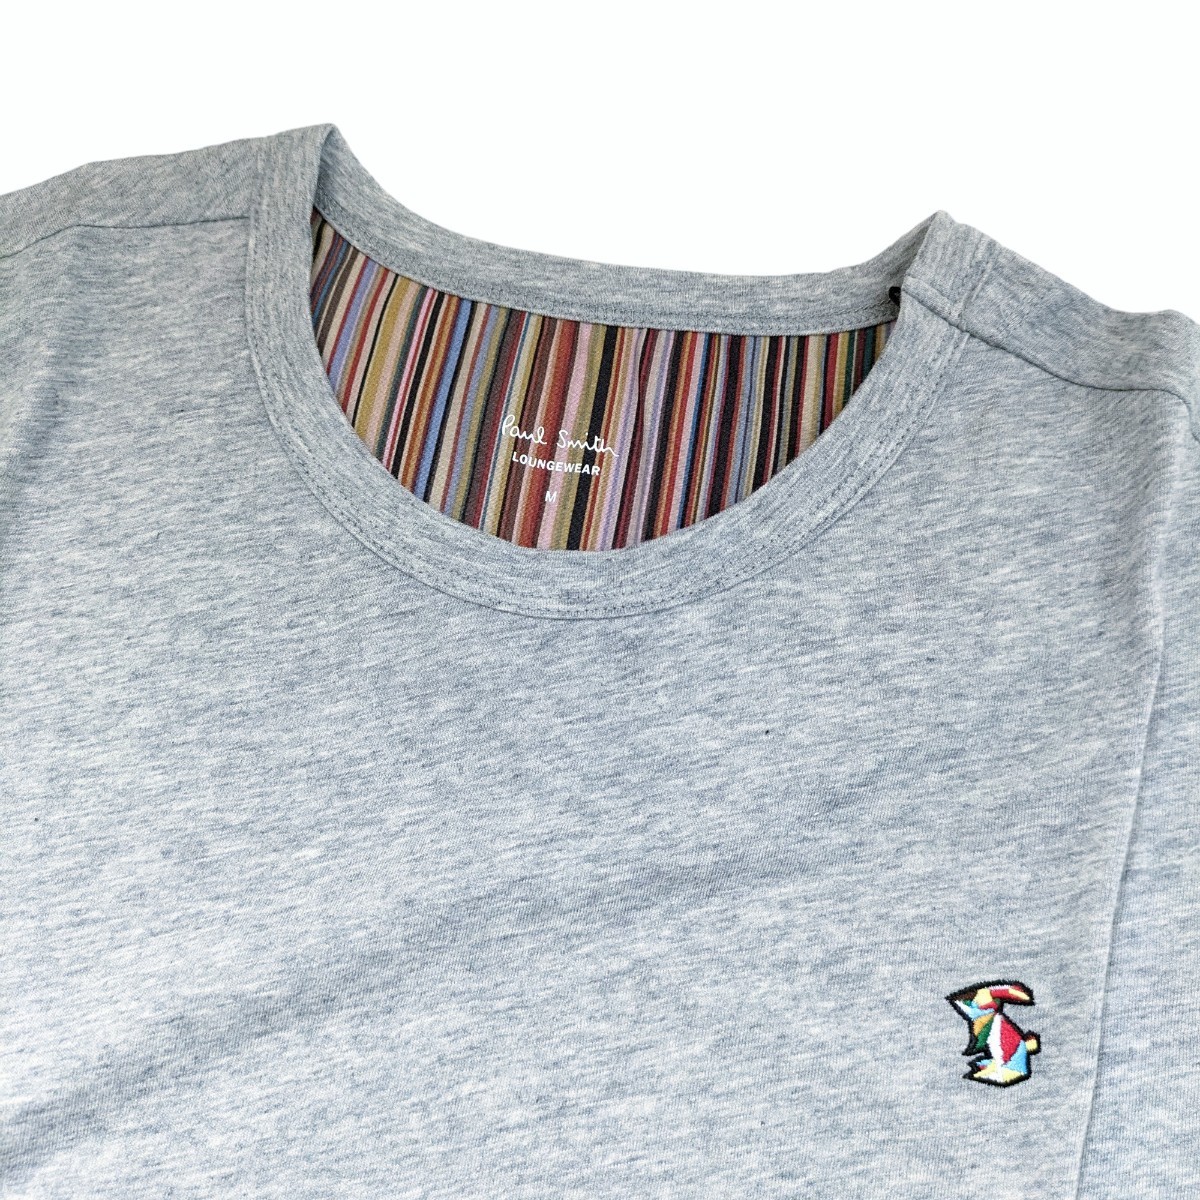  новый товар Paul Smith Paul Smith футболка с длинным рукавом M мульти- полоса кролик заяц трикотажный джемпер с длинным рукавом серый .